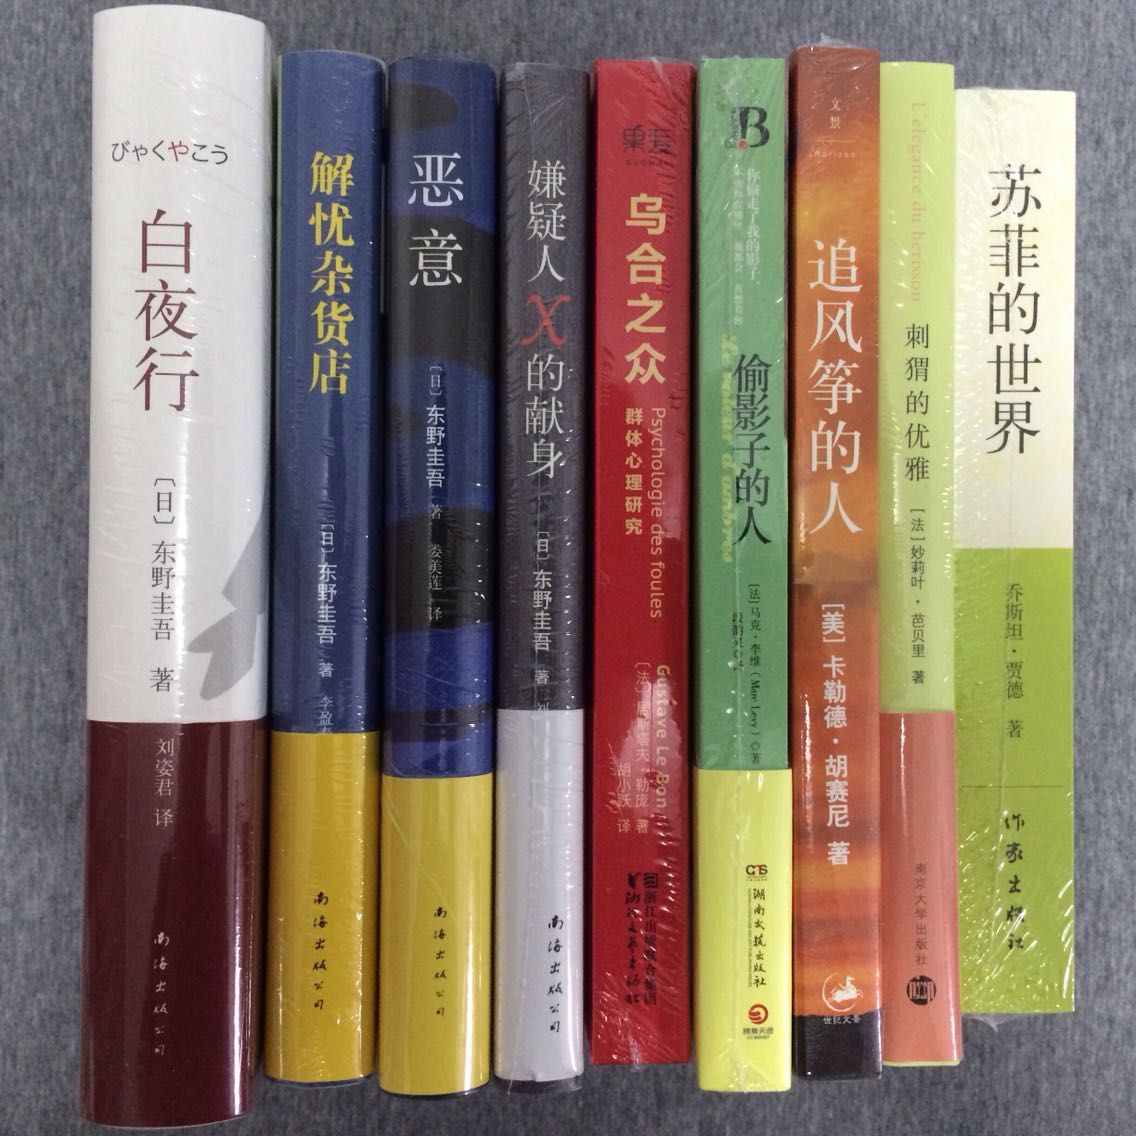 京東的圖書優惠活動 還是可以的  4月-6月期間 在京東買了近60本書  有排看咯  近半年不用再買書   嗯 618京東快遞慢了一天   是有多少人買東西呀  哈哈哈 可怕